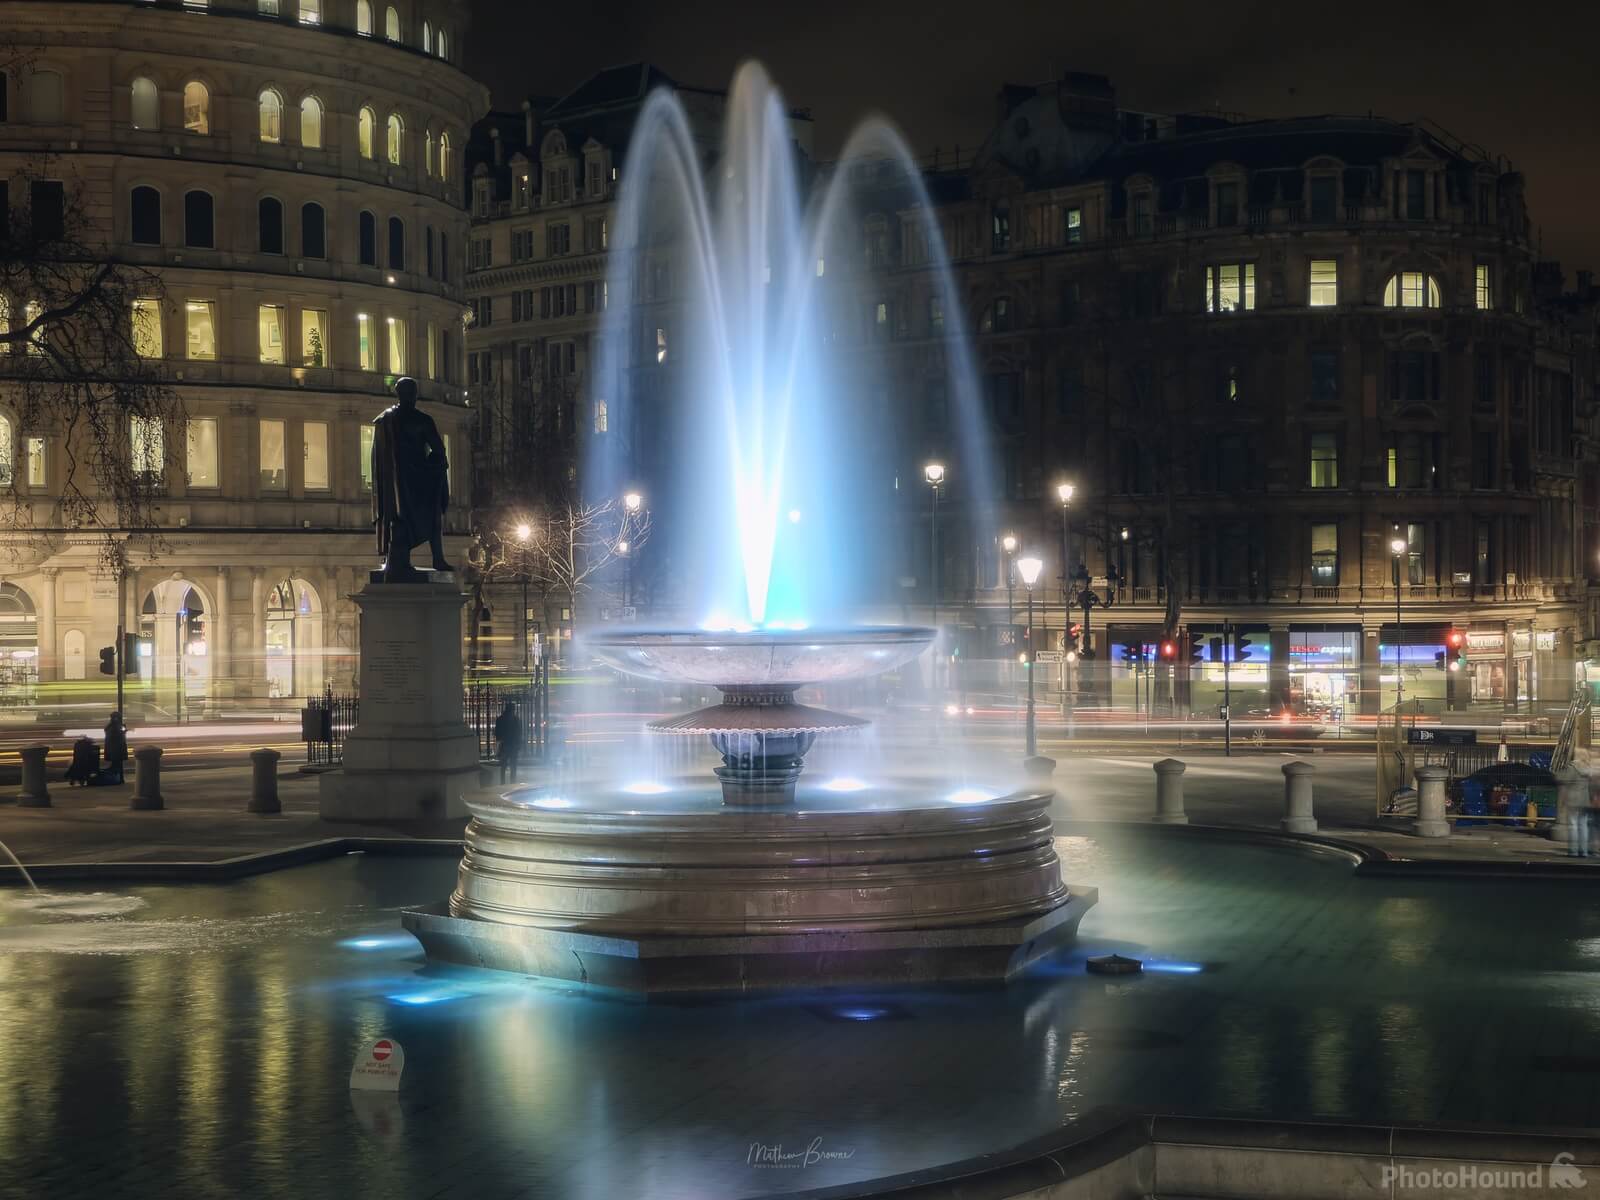 Image of Trafalgar Square by Mathew Browne